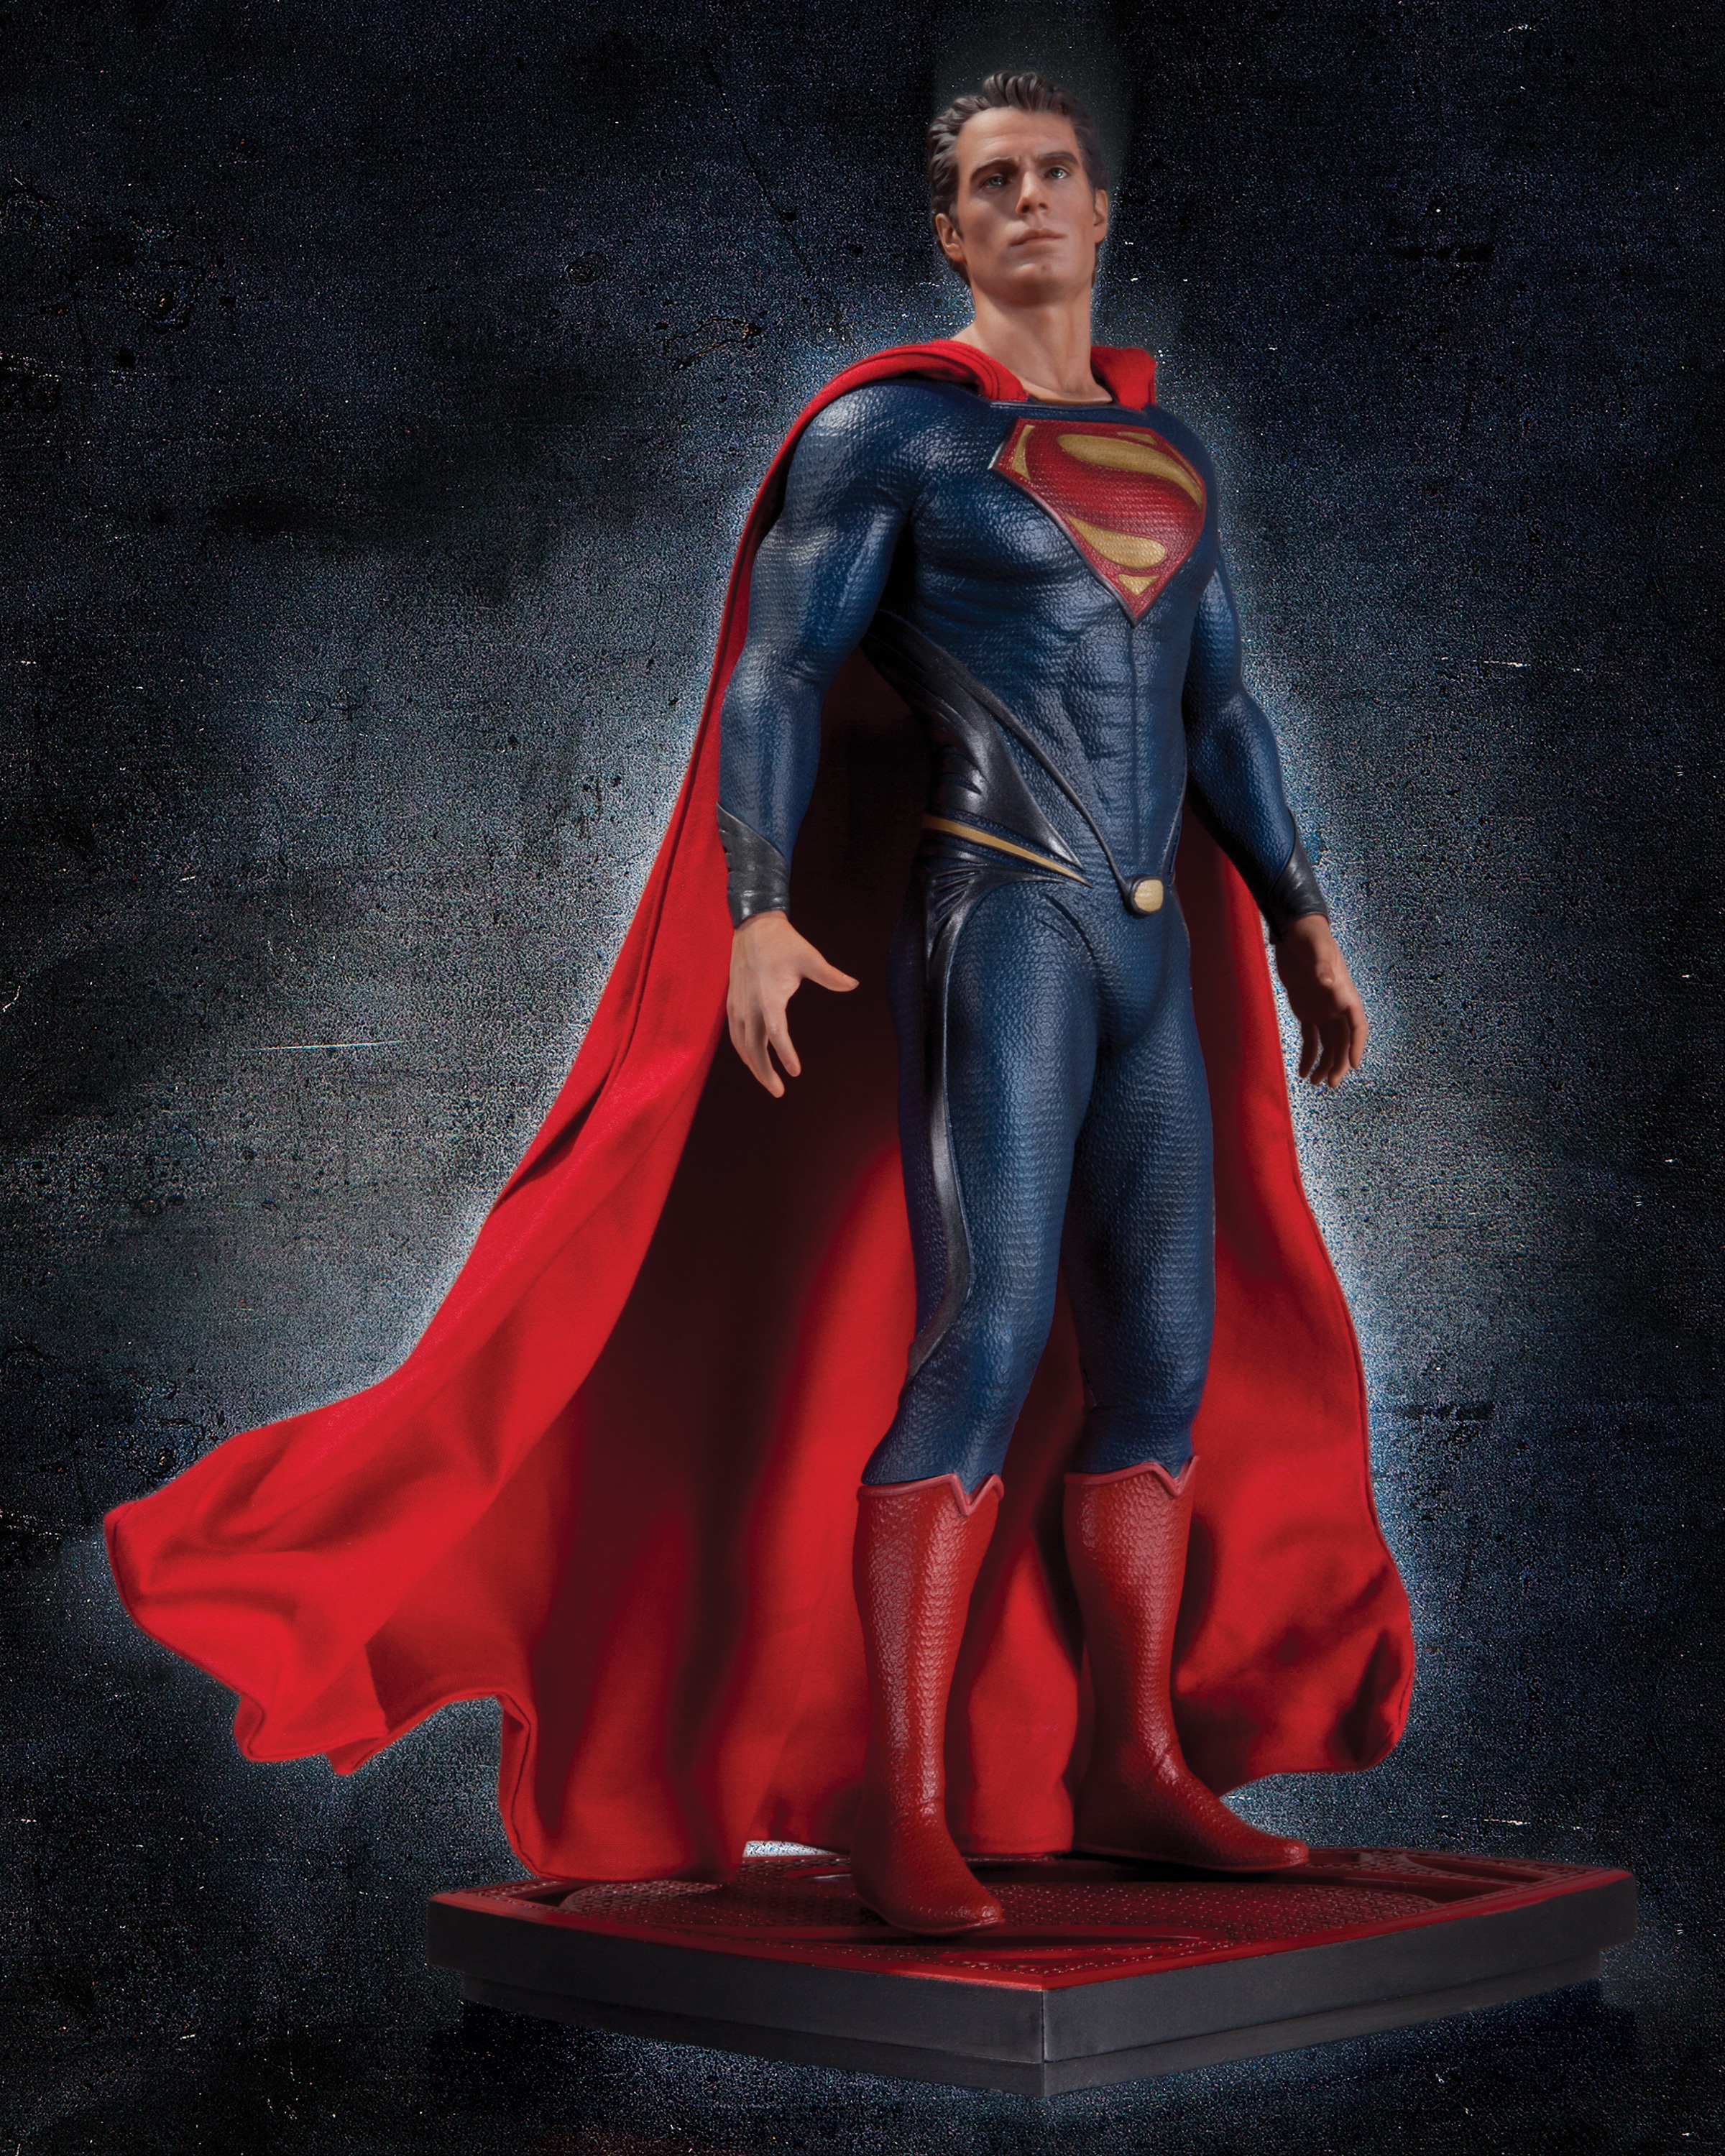 Marvel super man. Henry Cavill Superman Statue. Superman Henry Cavill Cape.